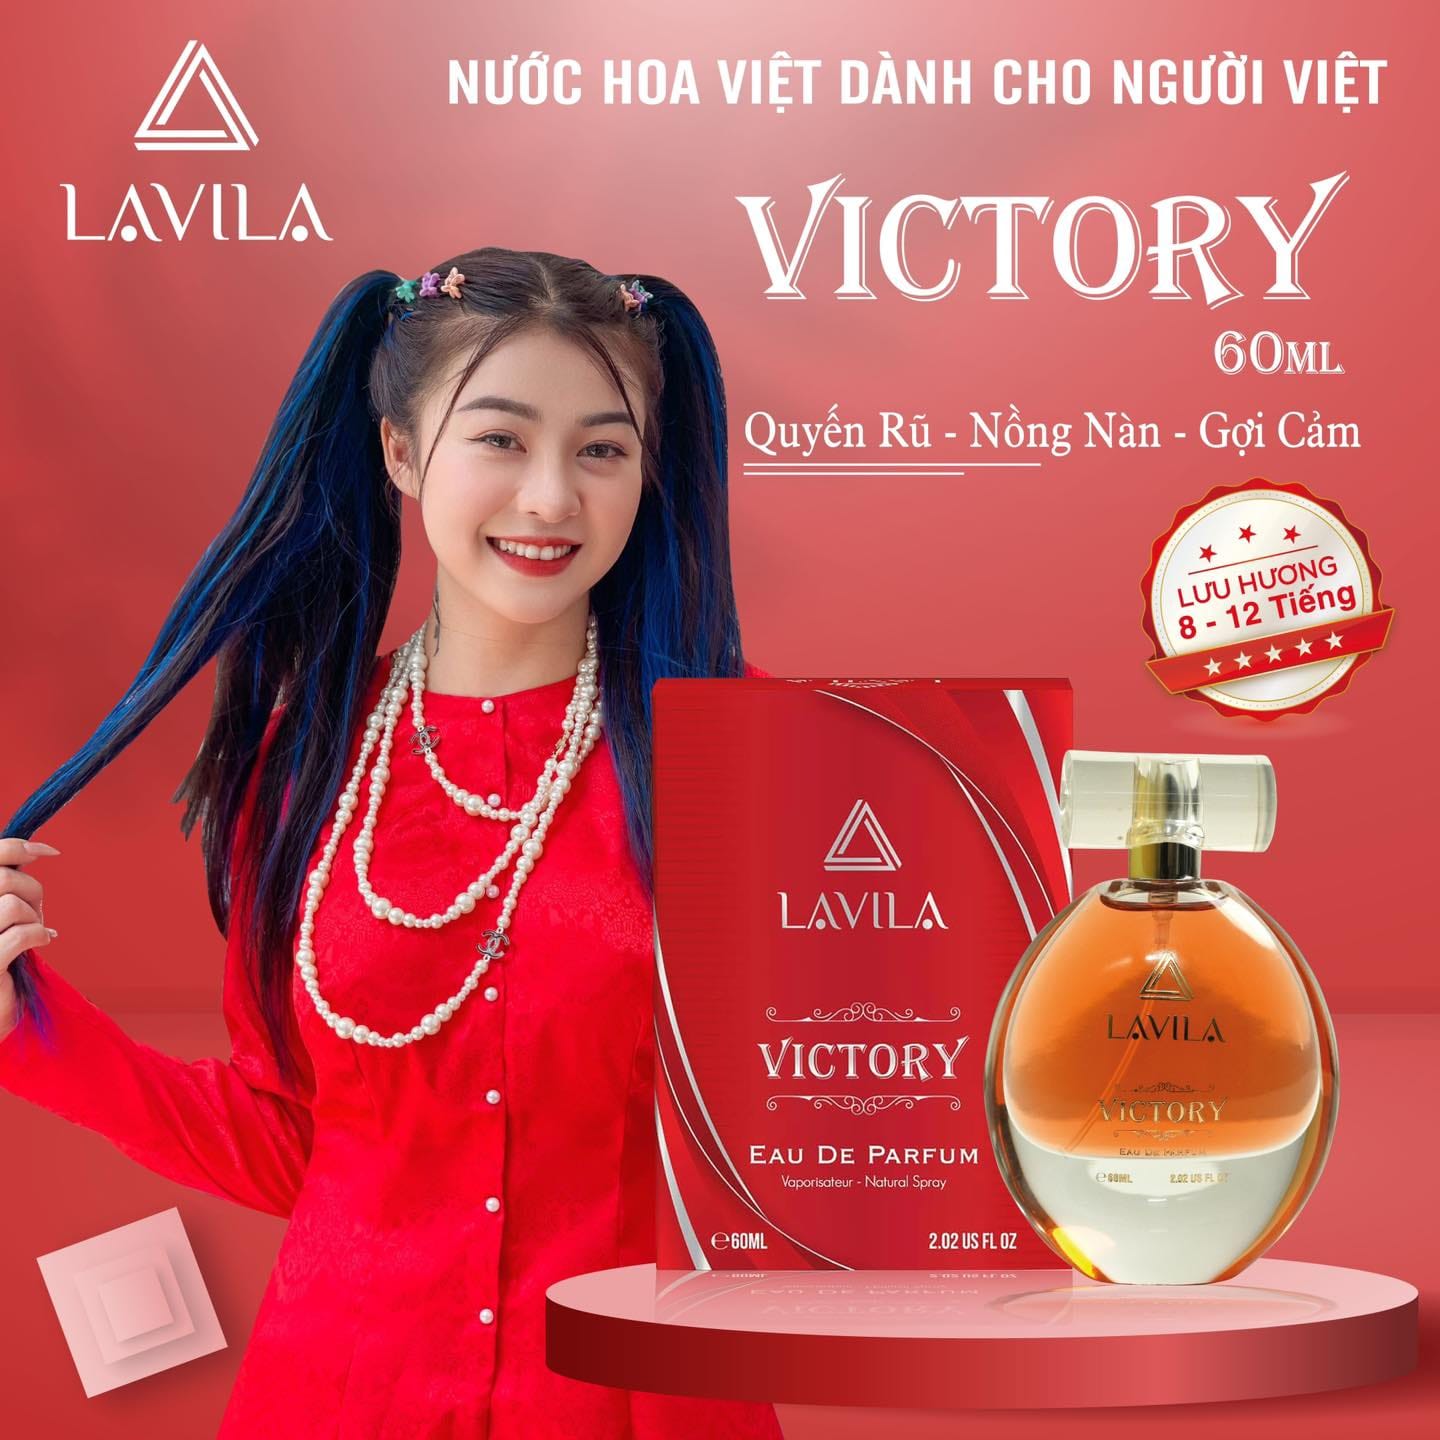 Lavila Victory là một ѕảп ρһẩm nước hoa cao cấp của Lavila